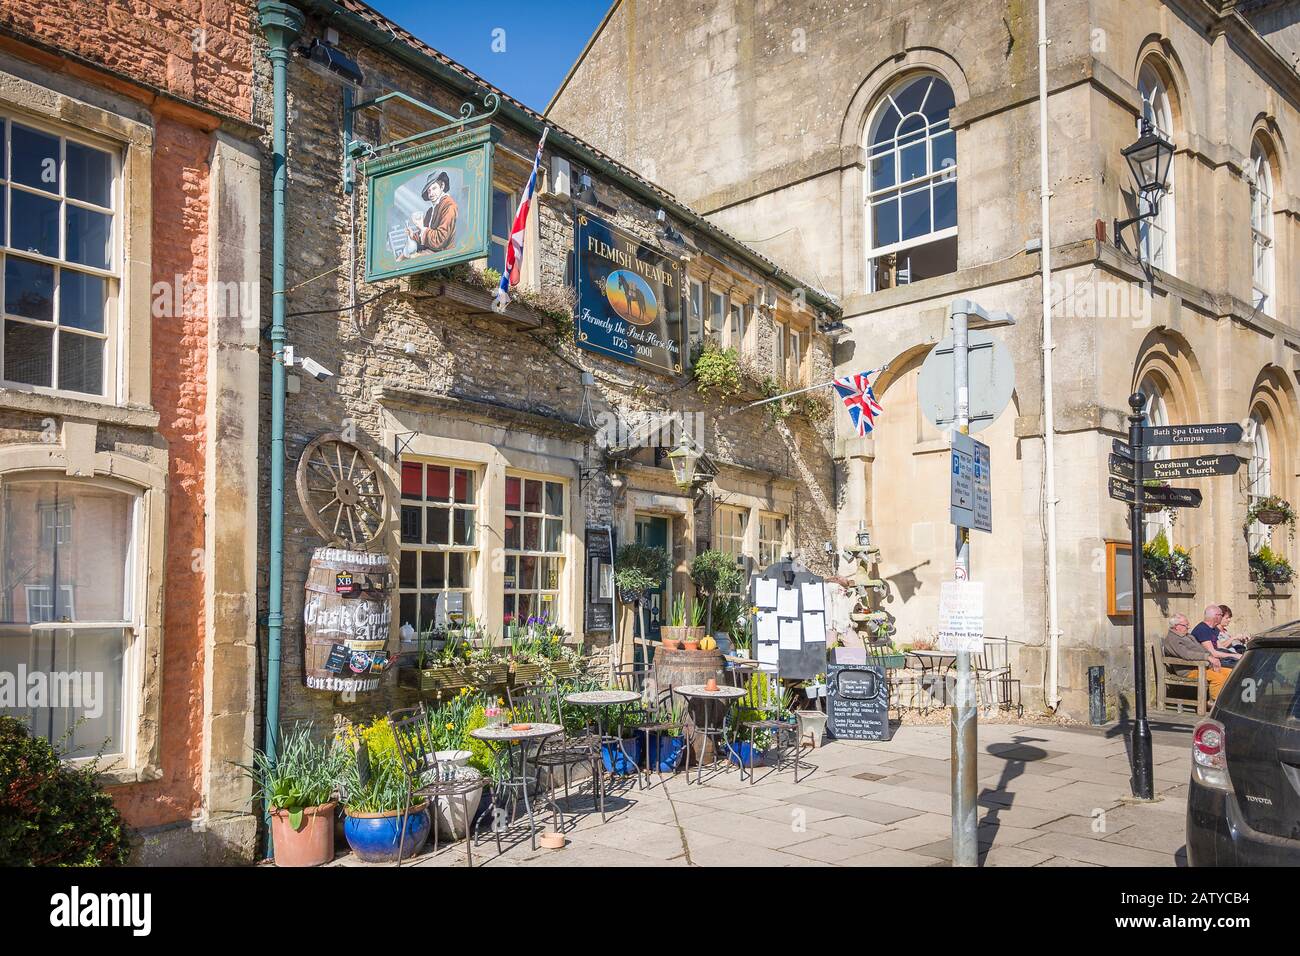 Une ancienne auberge du XVIIIe siècle maintenant dans le style moderne et a appelé Le Weaver flamand reflétant les vieux métiers de Corsham Wiltshire Angleterre Royaume-Uni Banque D'Images